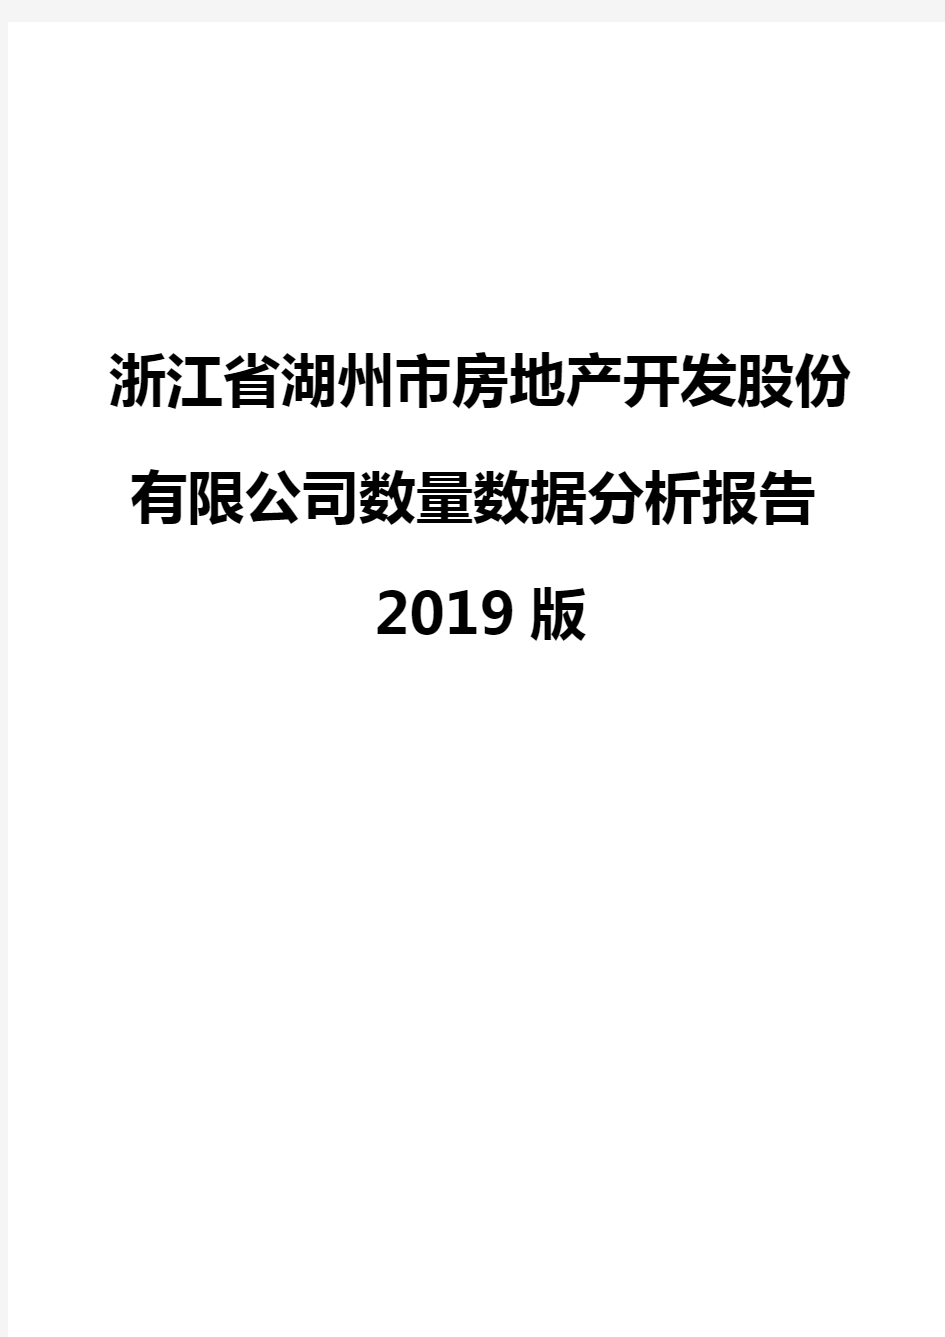 浙江省湖州市房地产开发股份有限公司数量数据分析报告2019版